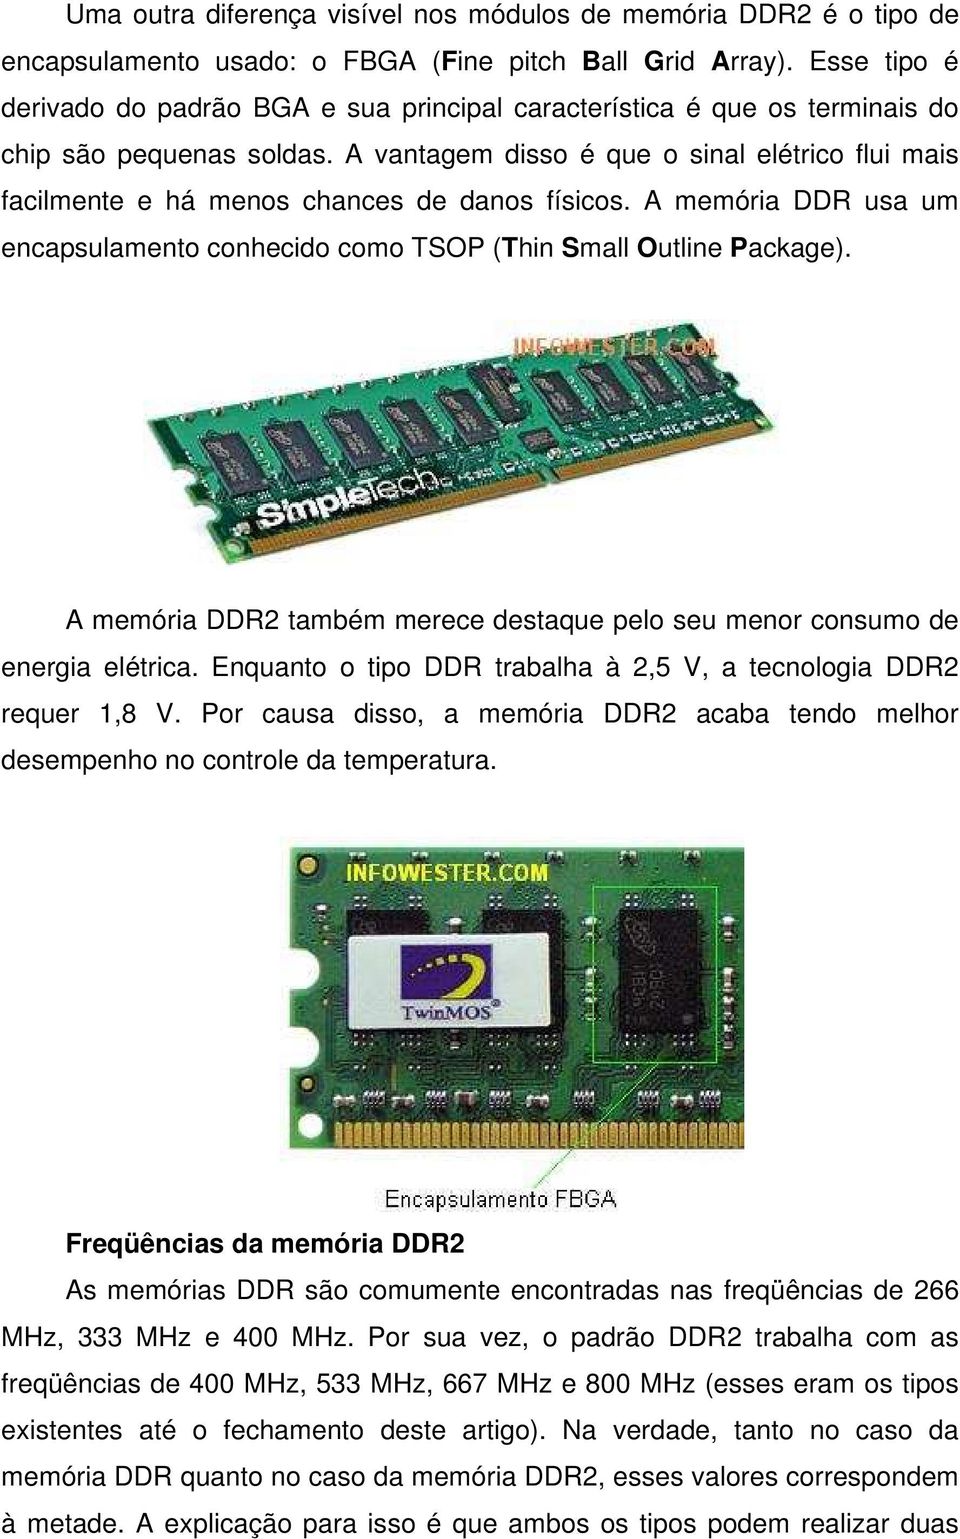 A vantagem disso é que o sinal elétrico flui mais facilmente e há menos chances de danos físicos. A memória DDR usa um encapsulamento conhecido como TSOP (Thin Small Outline Package).